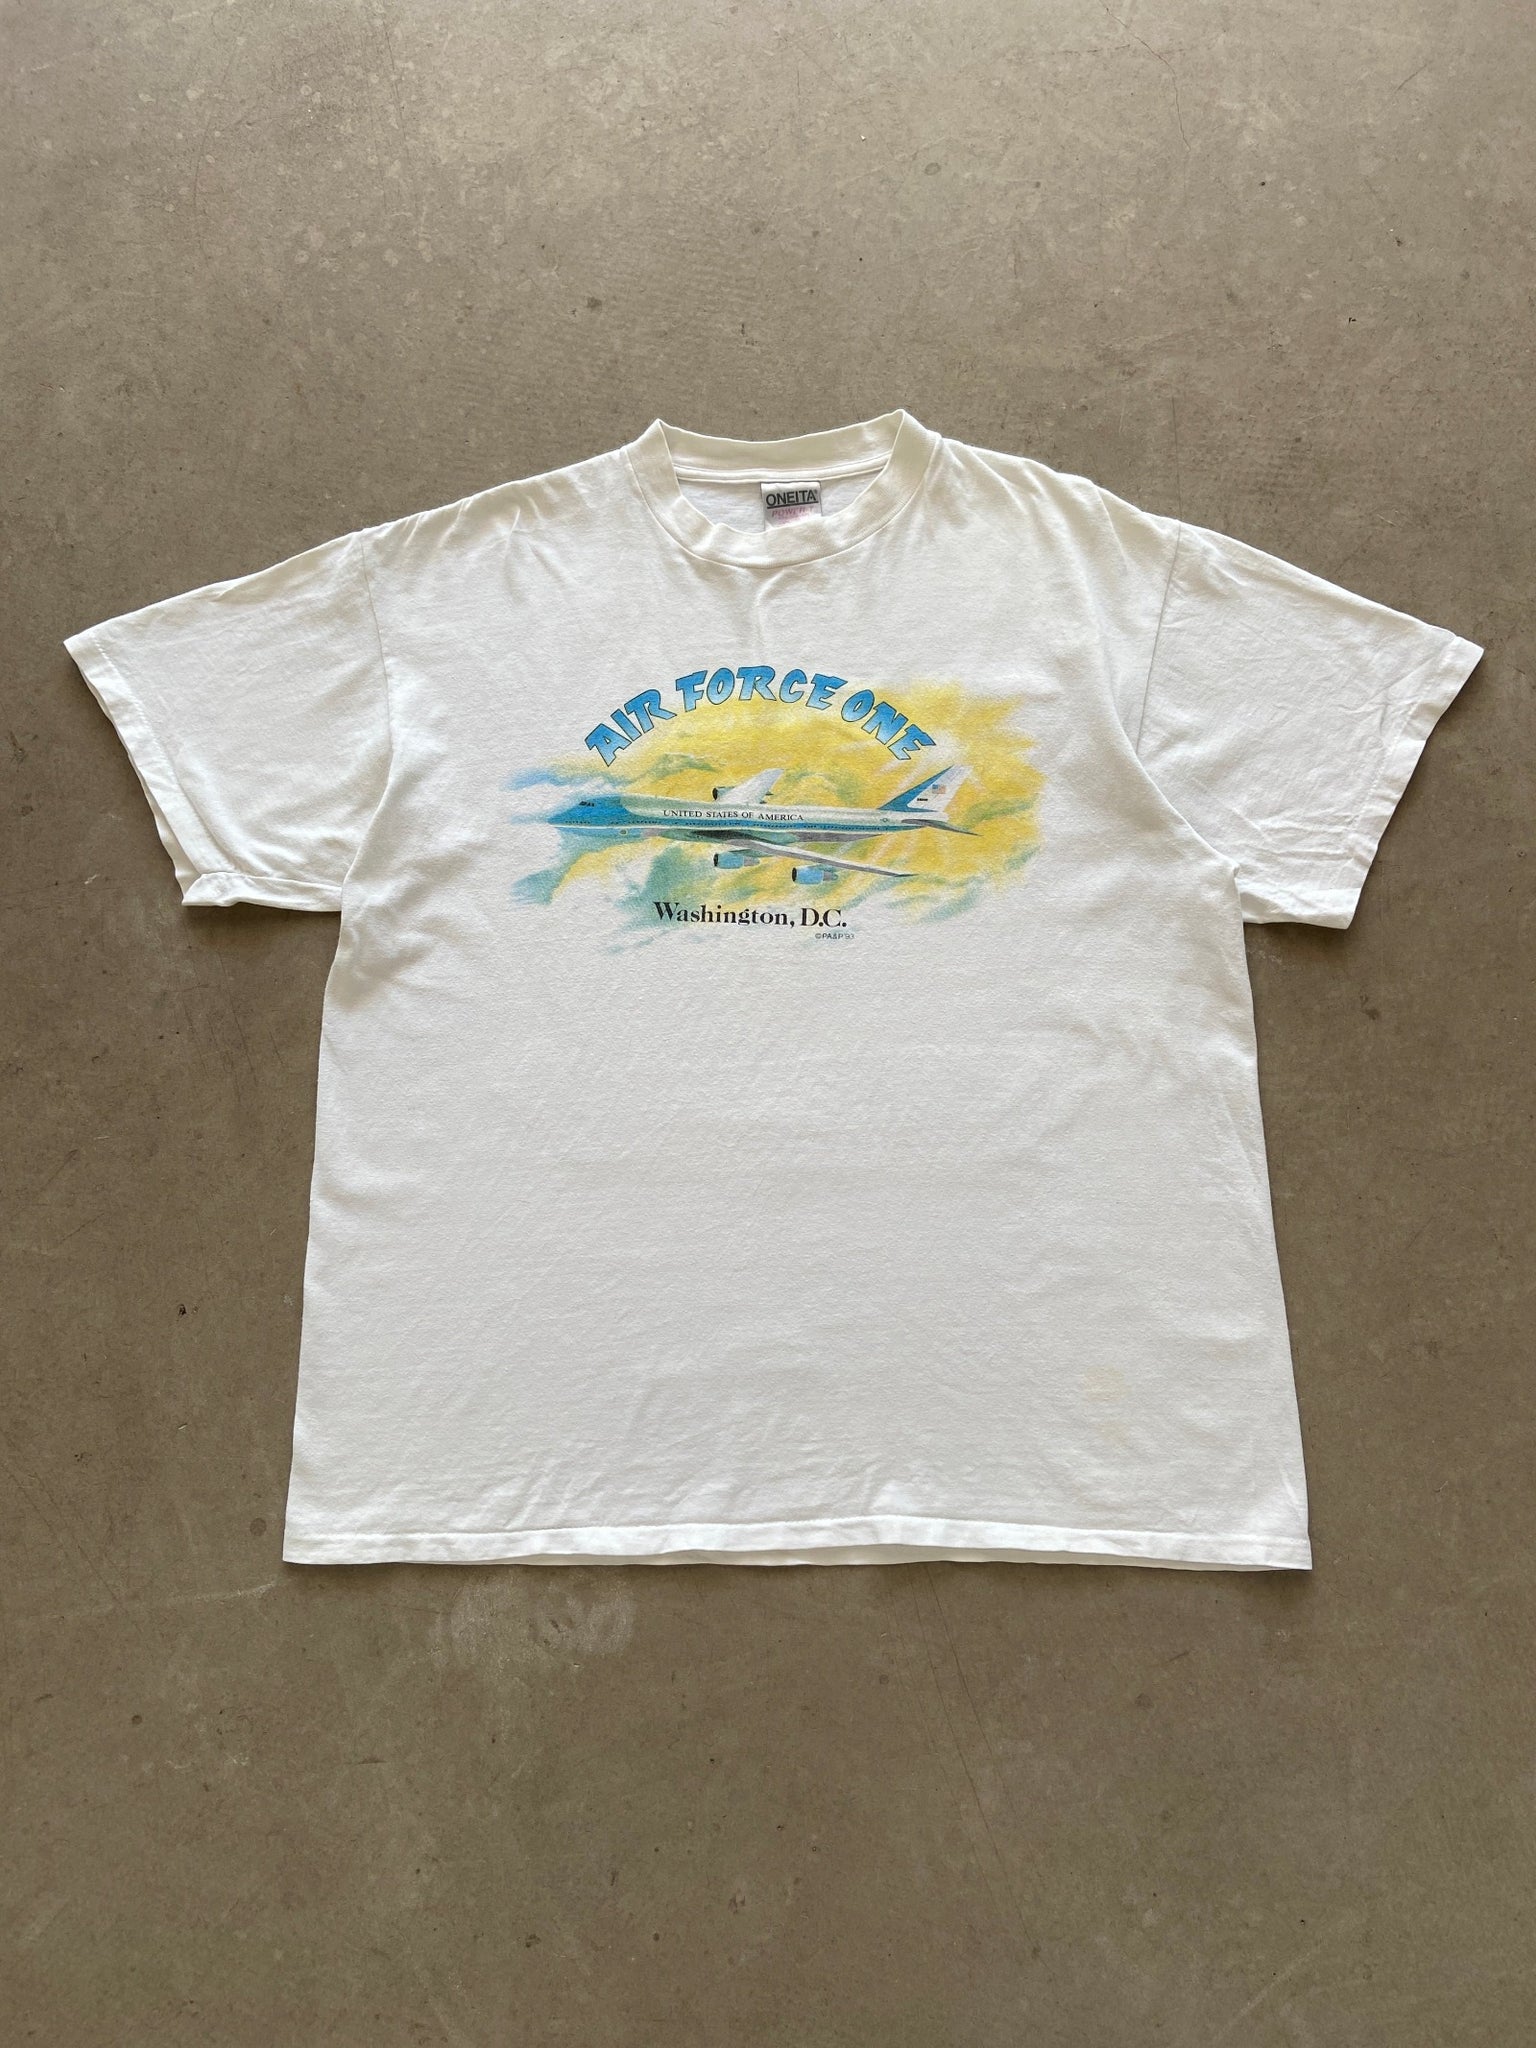 1993 Air Force One T-Shirt - XL